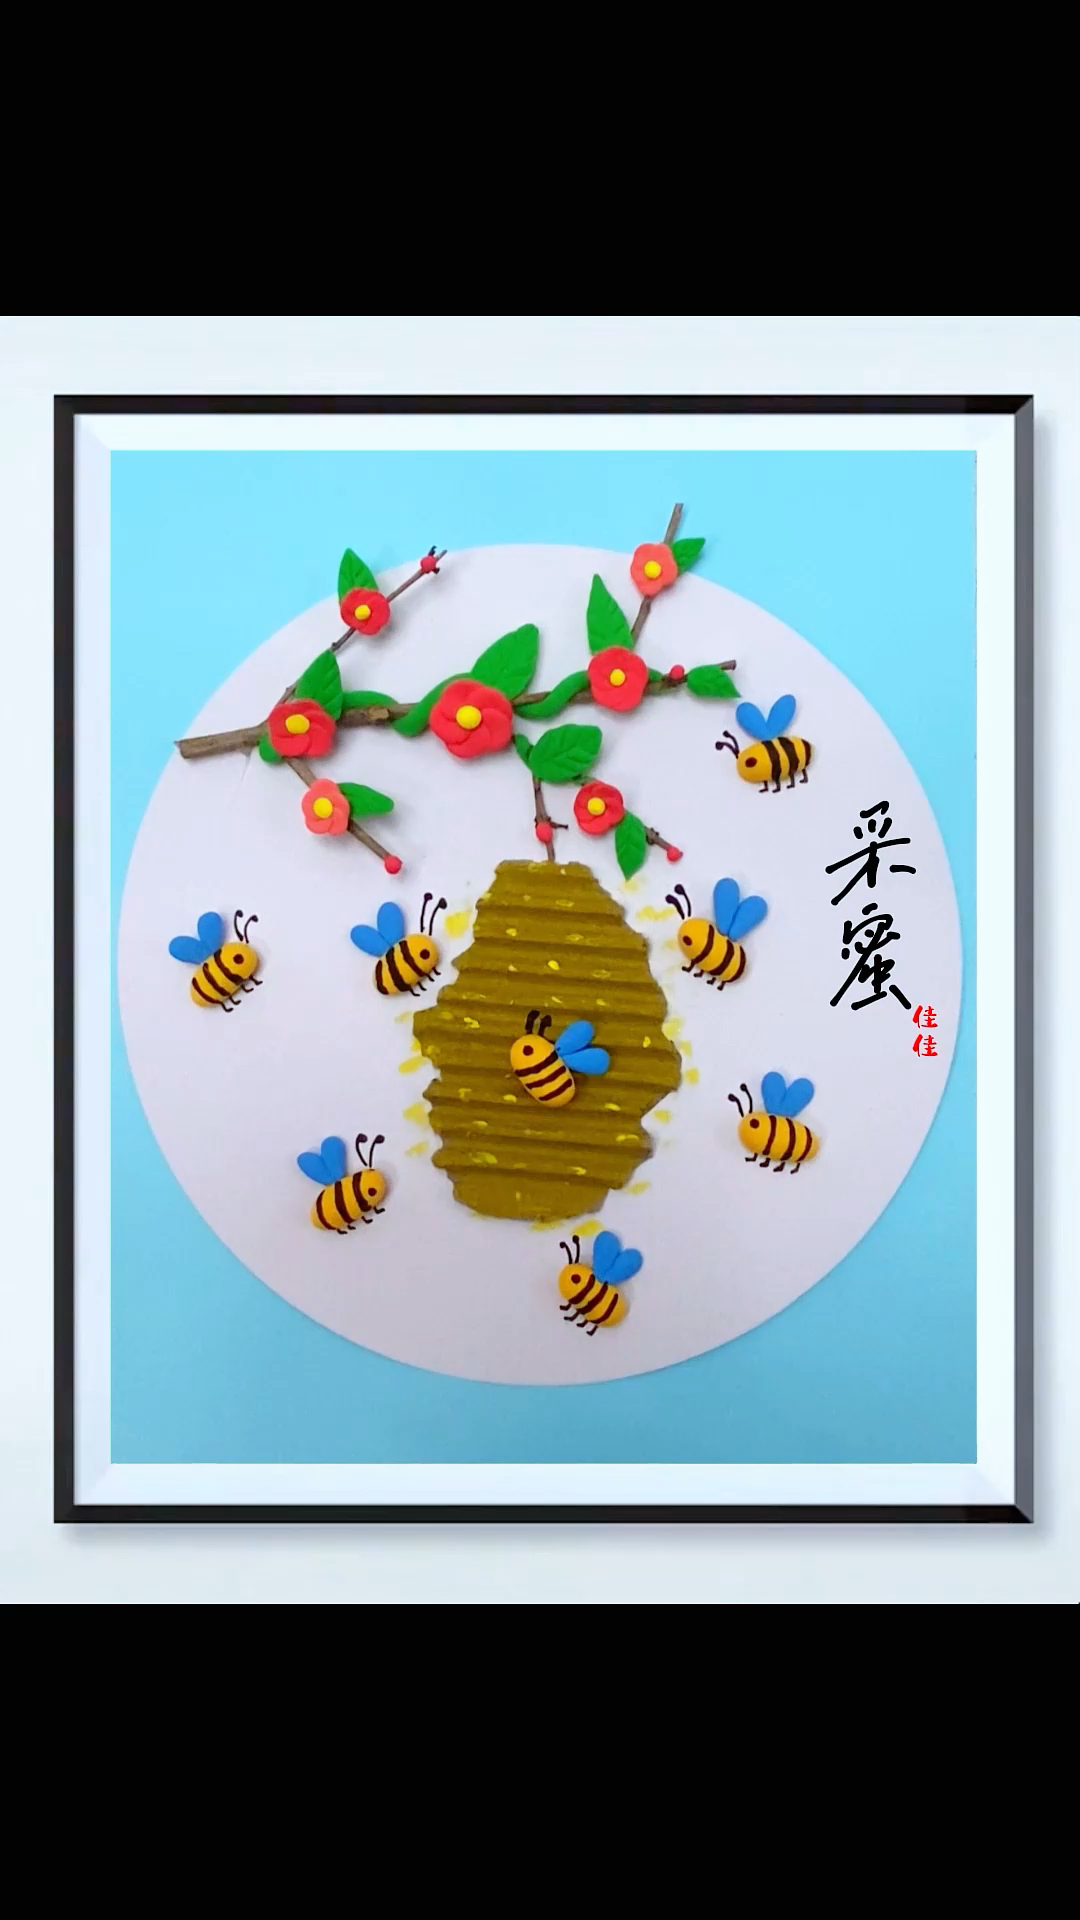 蜜蜂粘土画图片